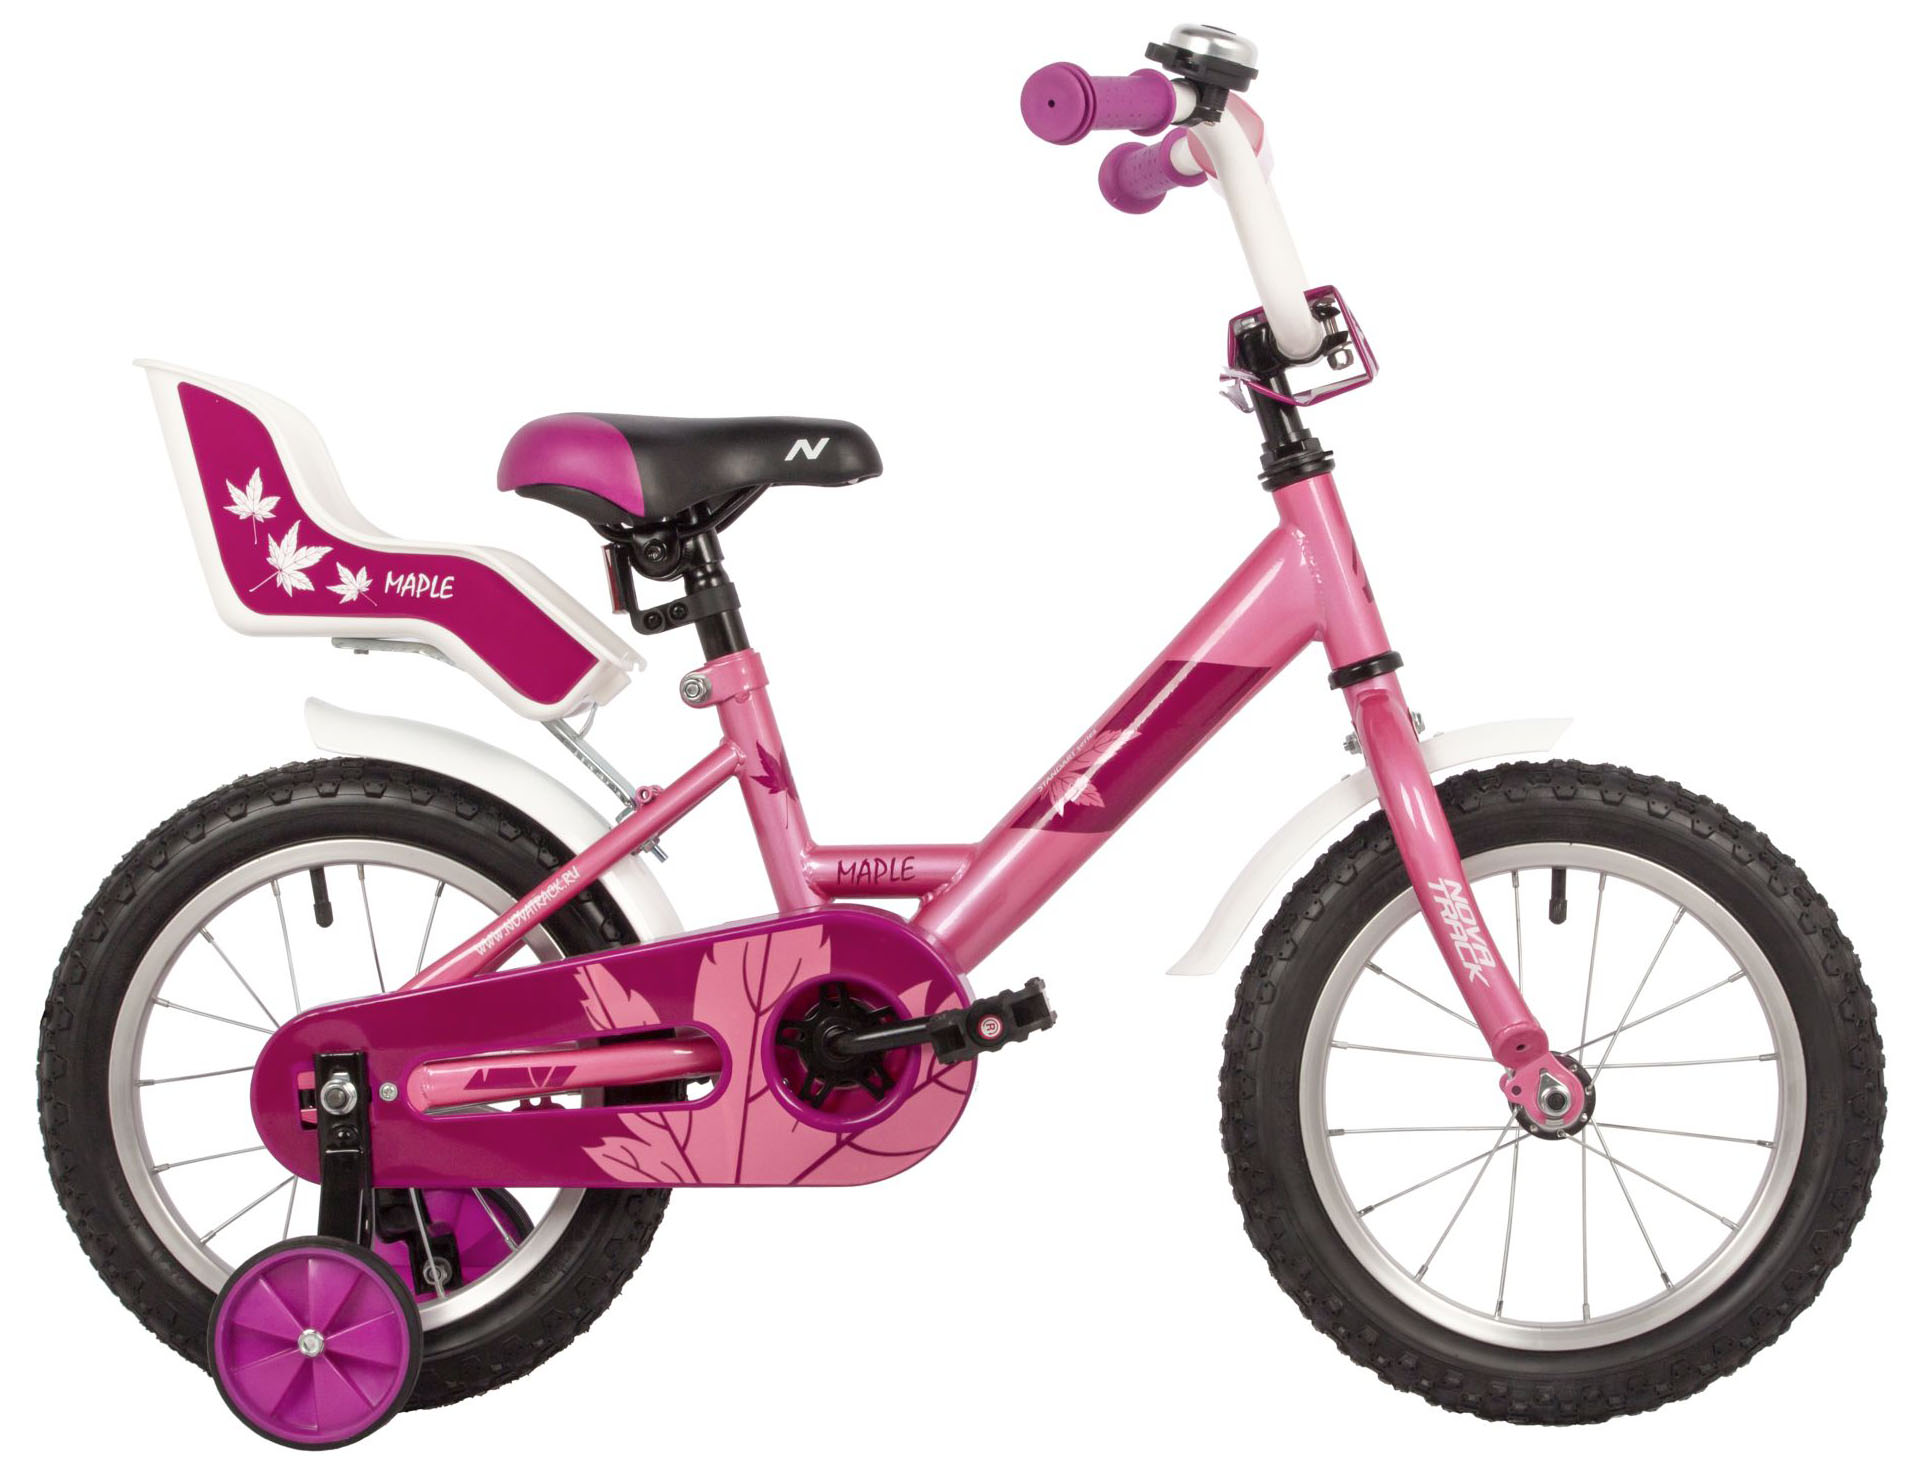  Отзывы о Детском велосипеде Novatrack Maple 14 2022